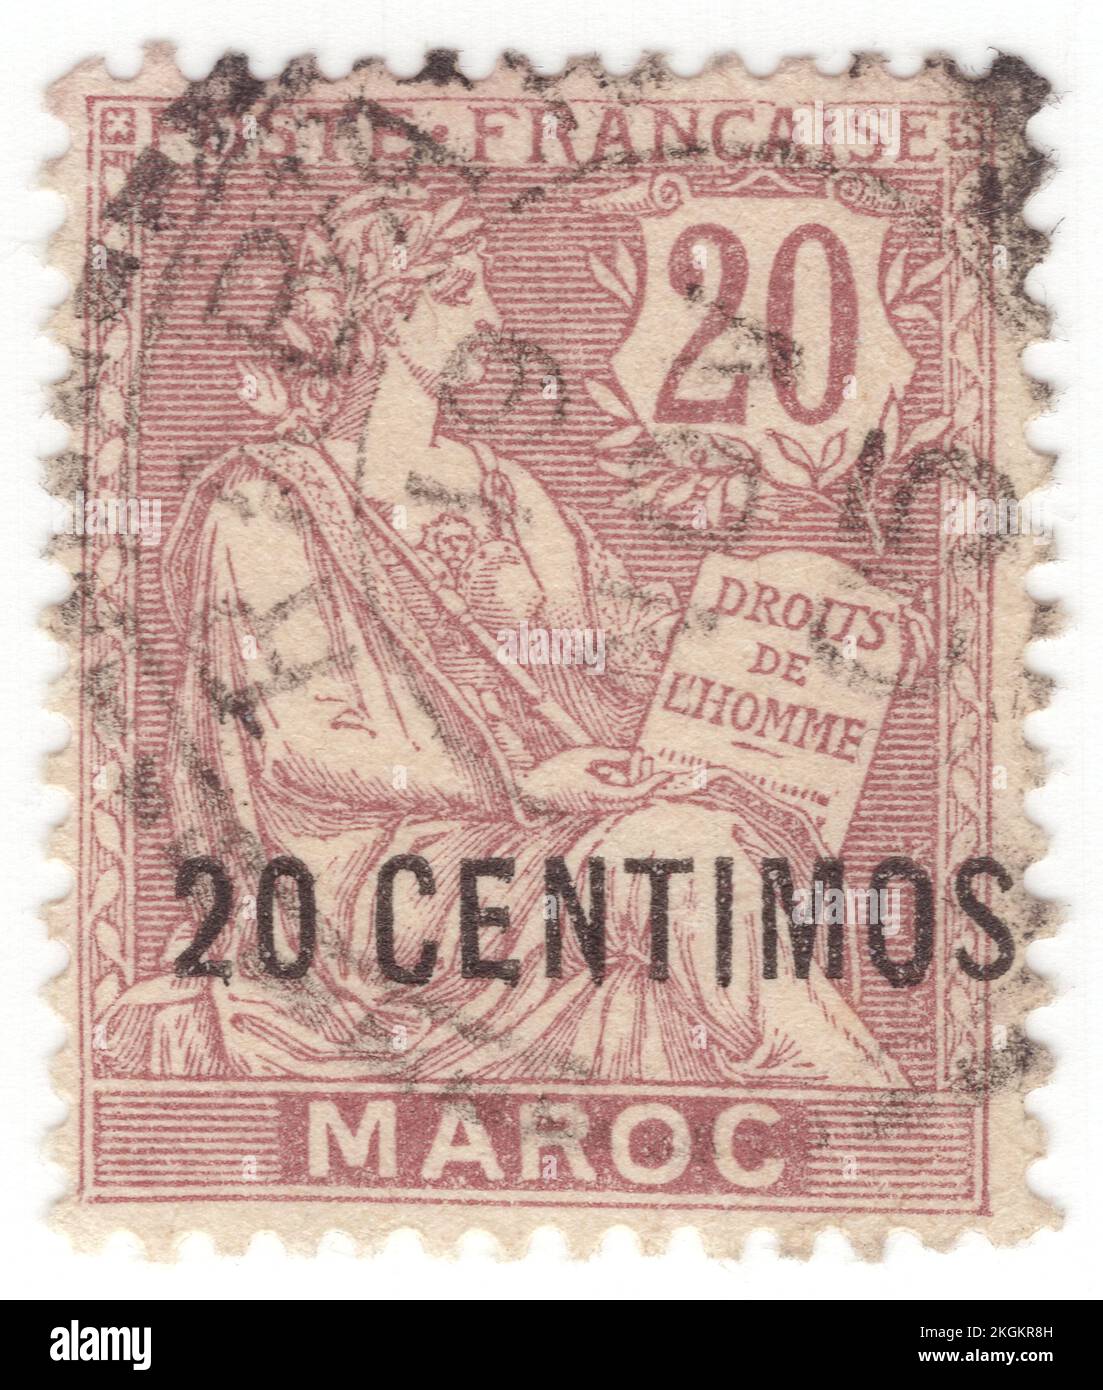 MAROCCO FRANCESE - 1903: Un francobollo viola marrone da 20 centimos su 20 centesimi raffigurante l’antica dea come allegoria “i diritti dell’uomo”, disegnata da Paul-Joseph Blanc. Capitale — Rabat. Il Marocco francese fu un protettorato francese dal 1912 al 1956 quando, insieme alle zone spagnole e tangeri del Marocco, divenne il paese indipendente, il Marocco. Nella zona internazionale di Tangeri, nel nord del Marocco, sono stati sviati i francobolli “Tanger” Foto Stock